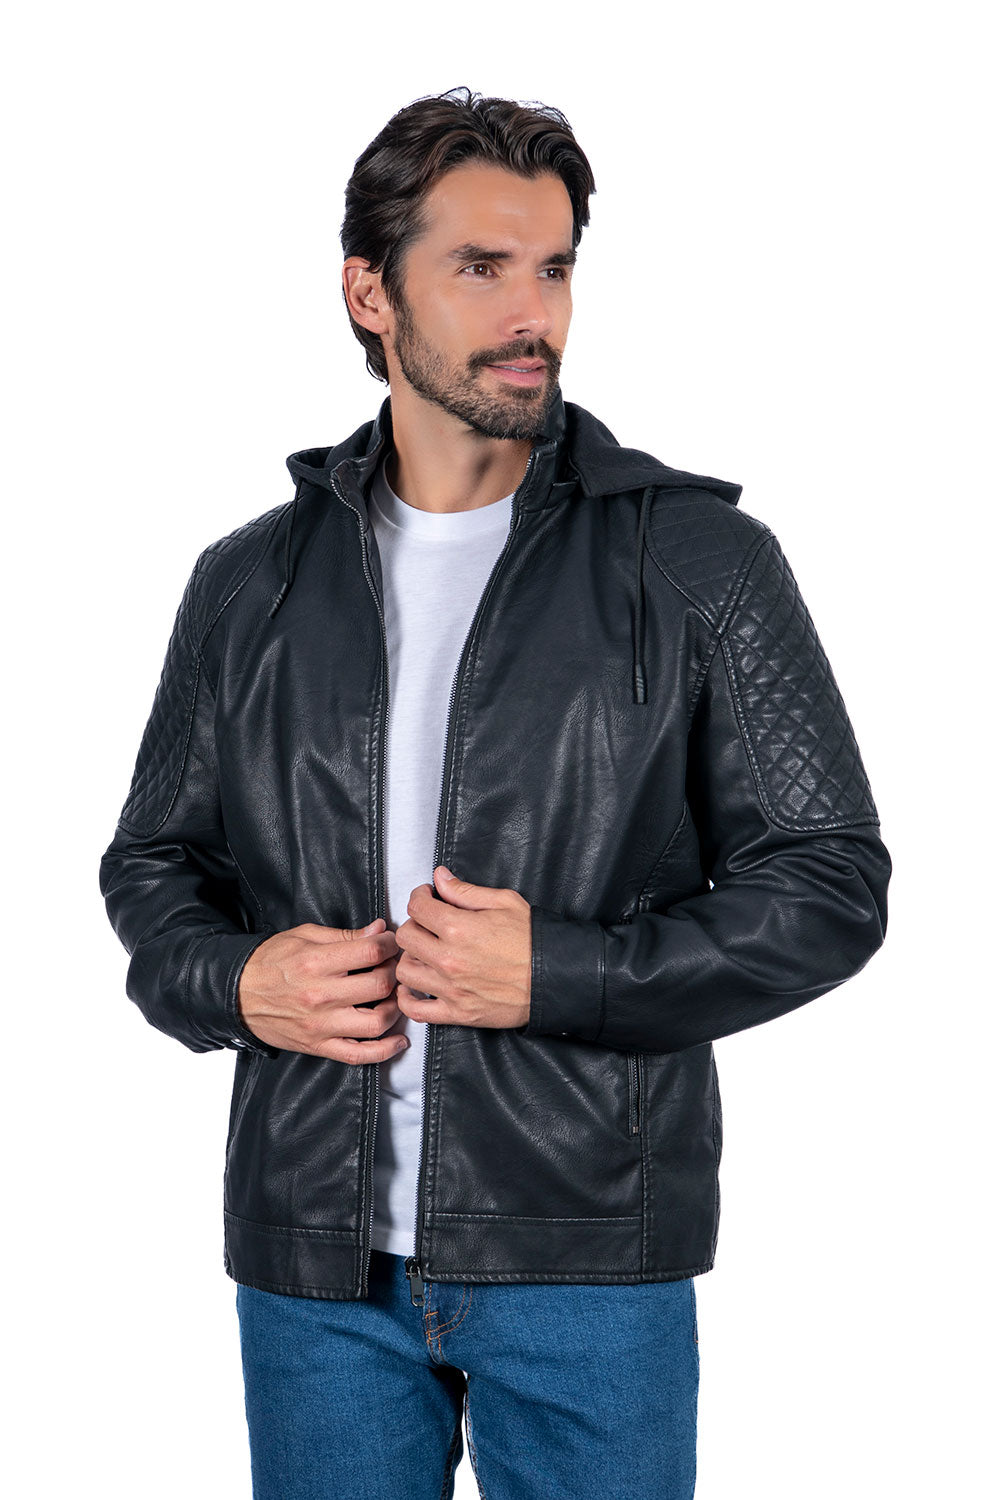 Men's PU Leather Jackets a Full Box of (S-M-L-XL-XXL / 4-6-7-4-3) 24pcs